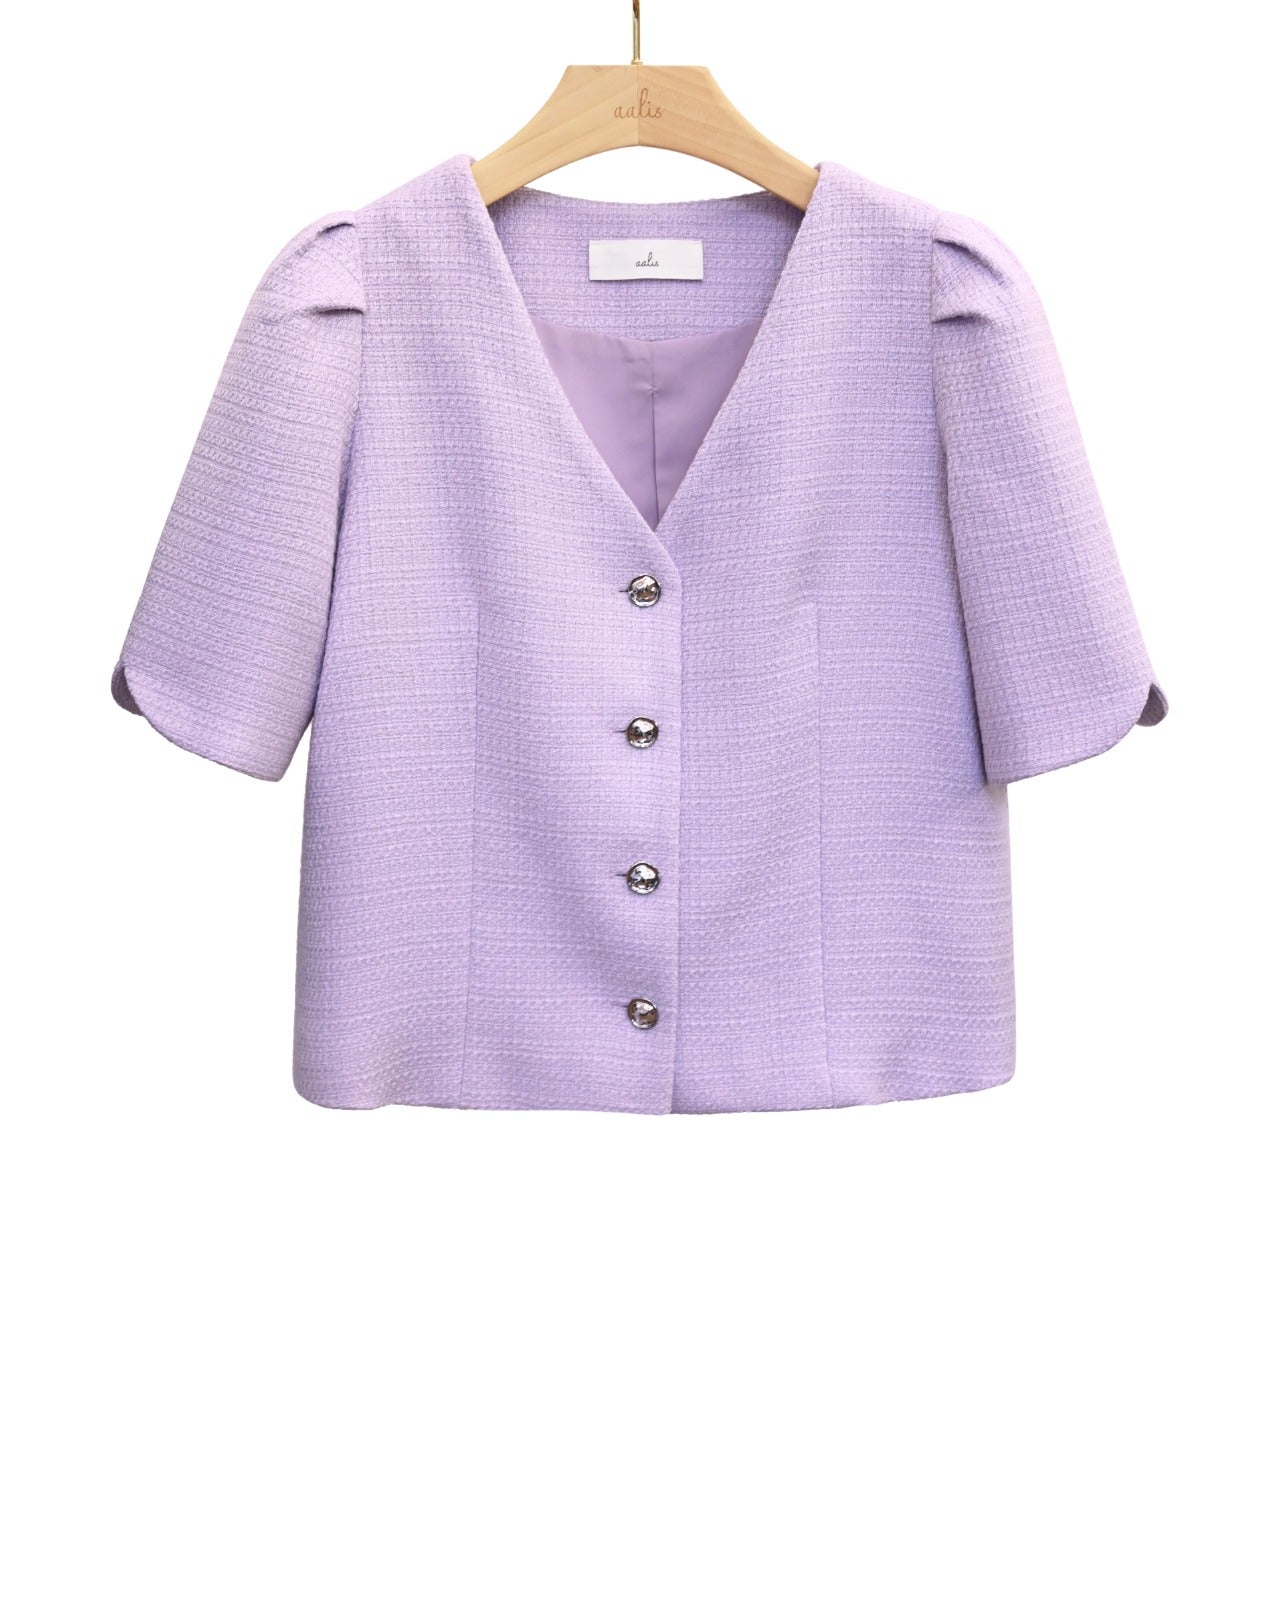 aalis POLL v neck tweed jacket (Purple)